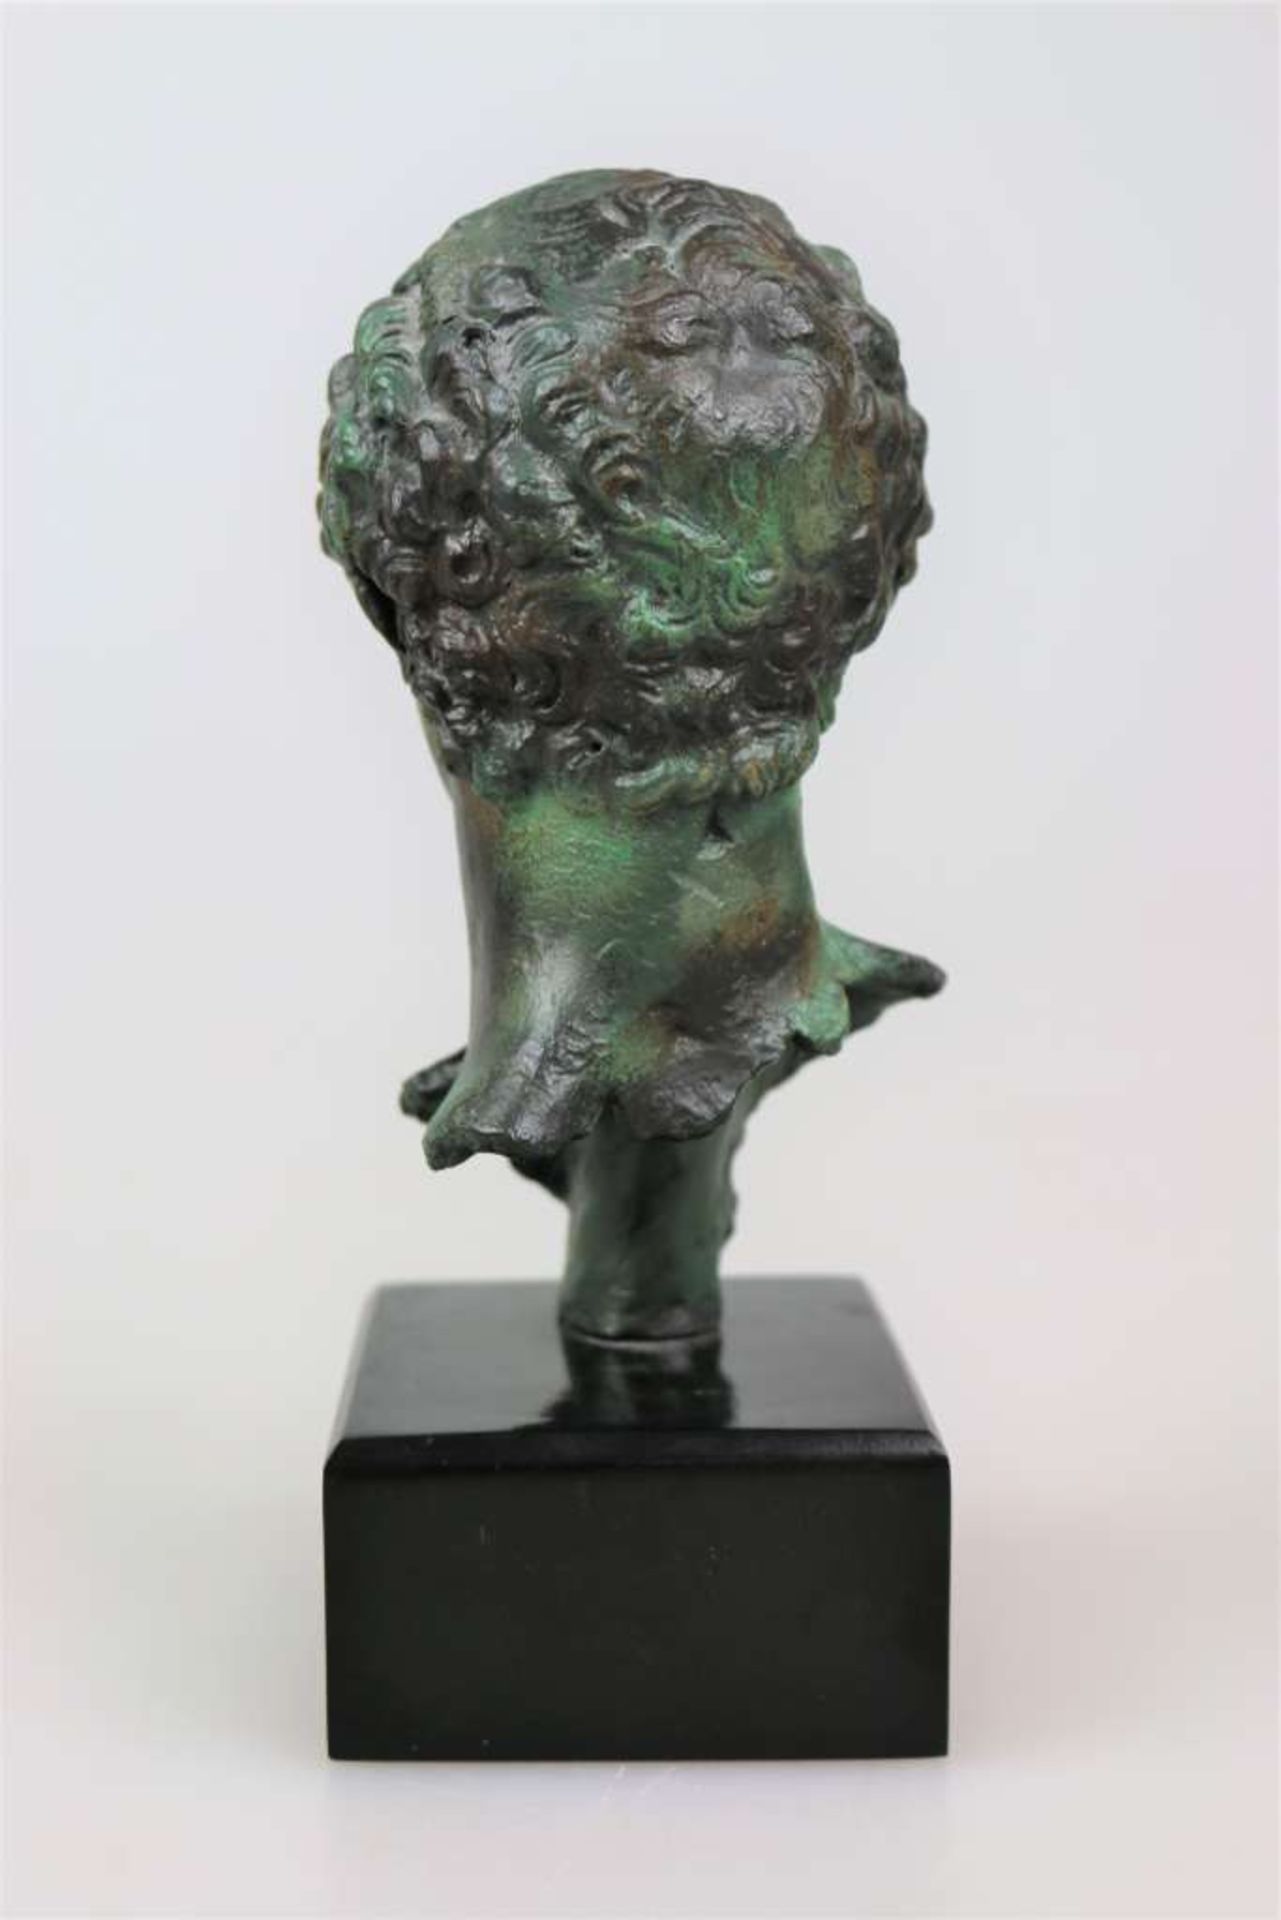 Antikisierender Hermes-Kopf, Kunstguss Bronze nachahmend, auf Holzsockel, H. mit Sockel. 20,5 cm. - Bild 2 aus 2